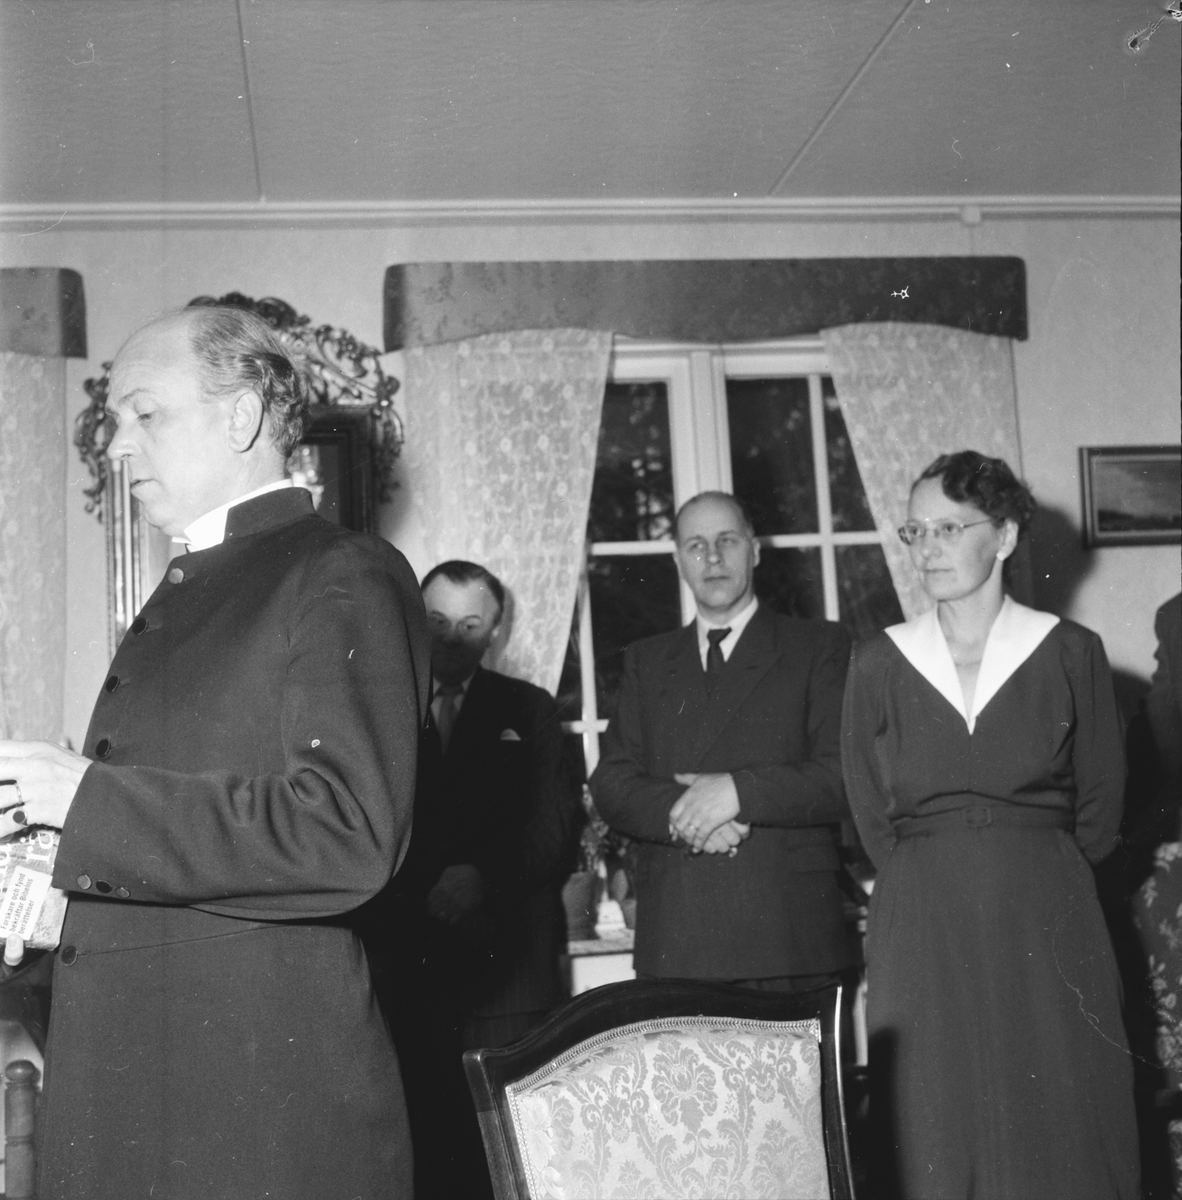 Kyrkoherde Åke Bungner,
Radioandakt på folkhögskolan 1957